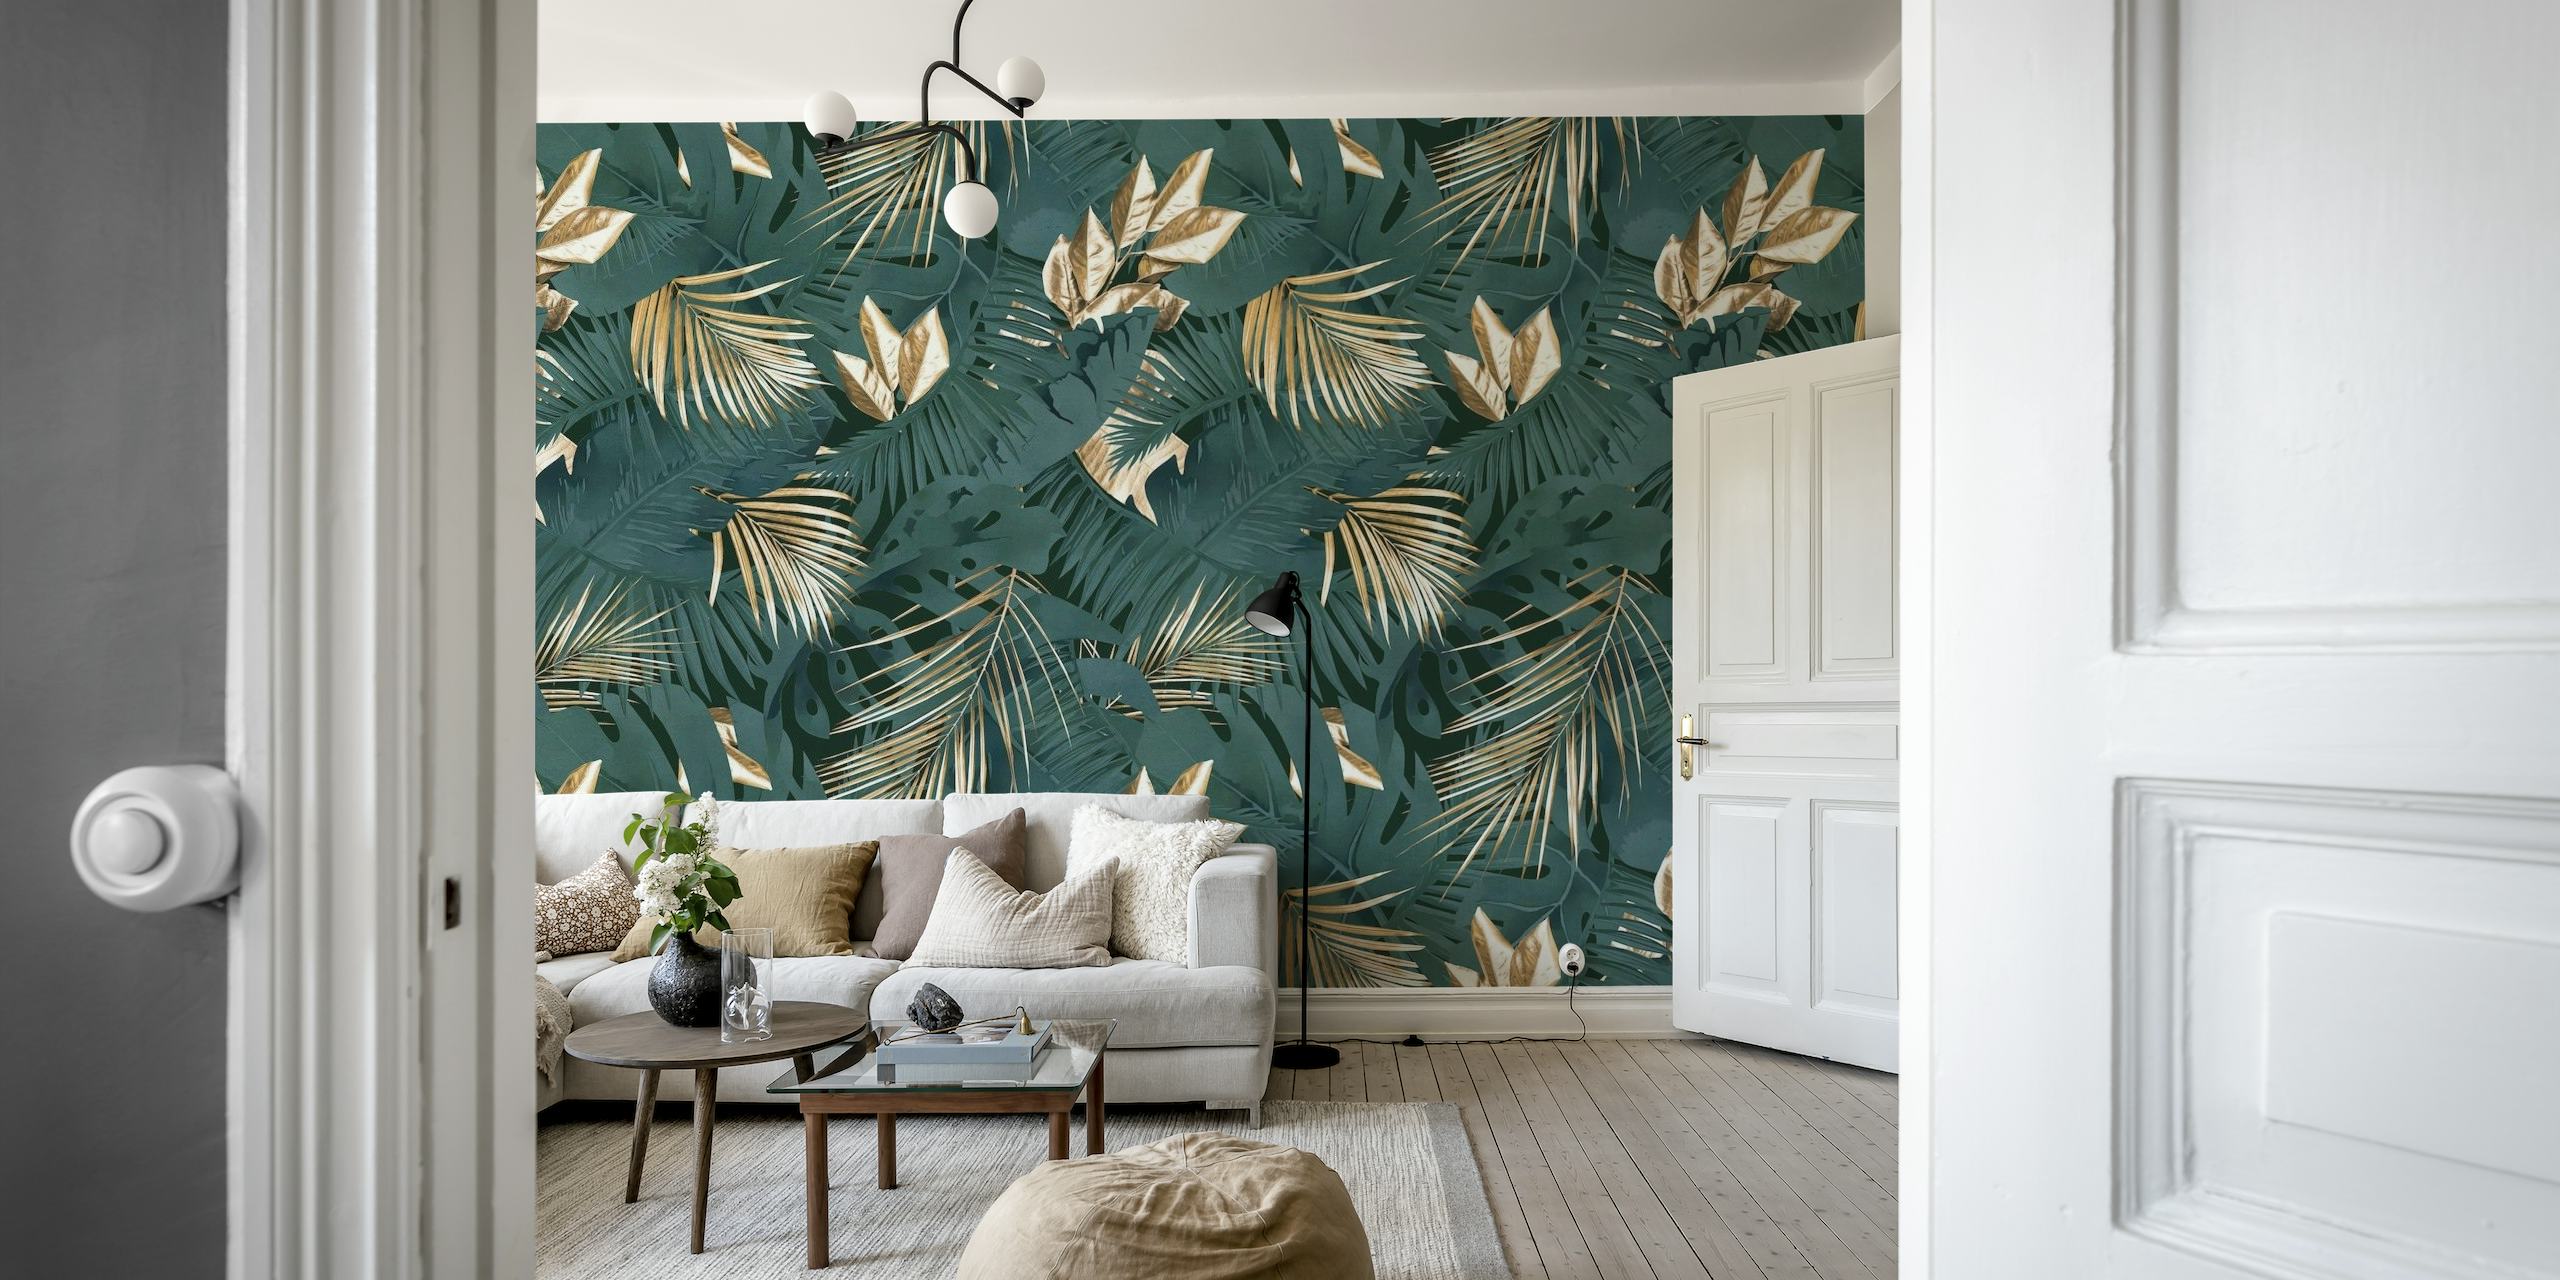 Ciemna fototapeta przedstawiająca liście palm z dżungli w bogatym stylu glamour